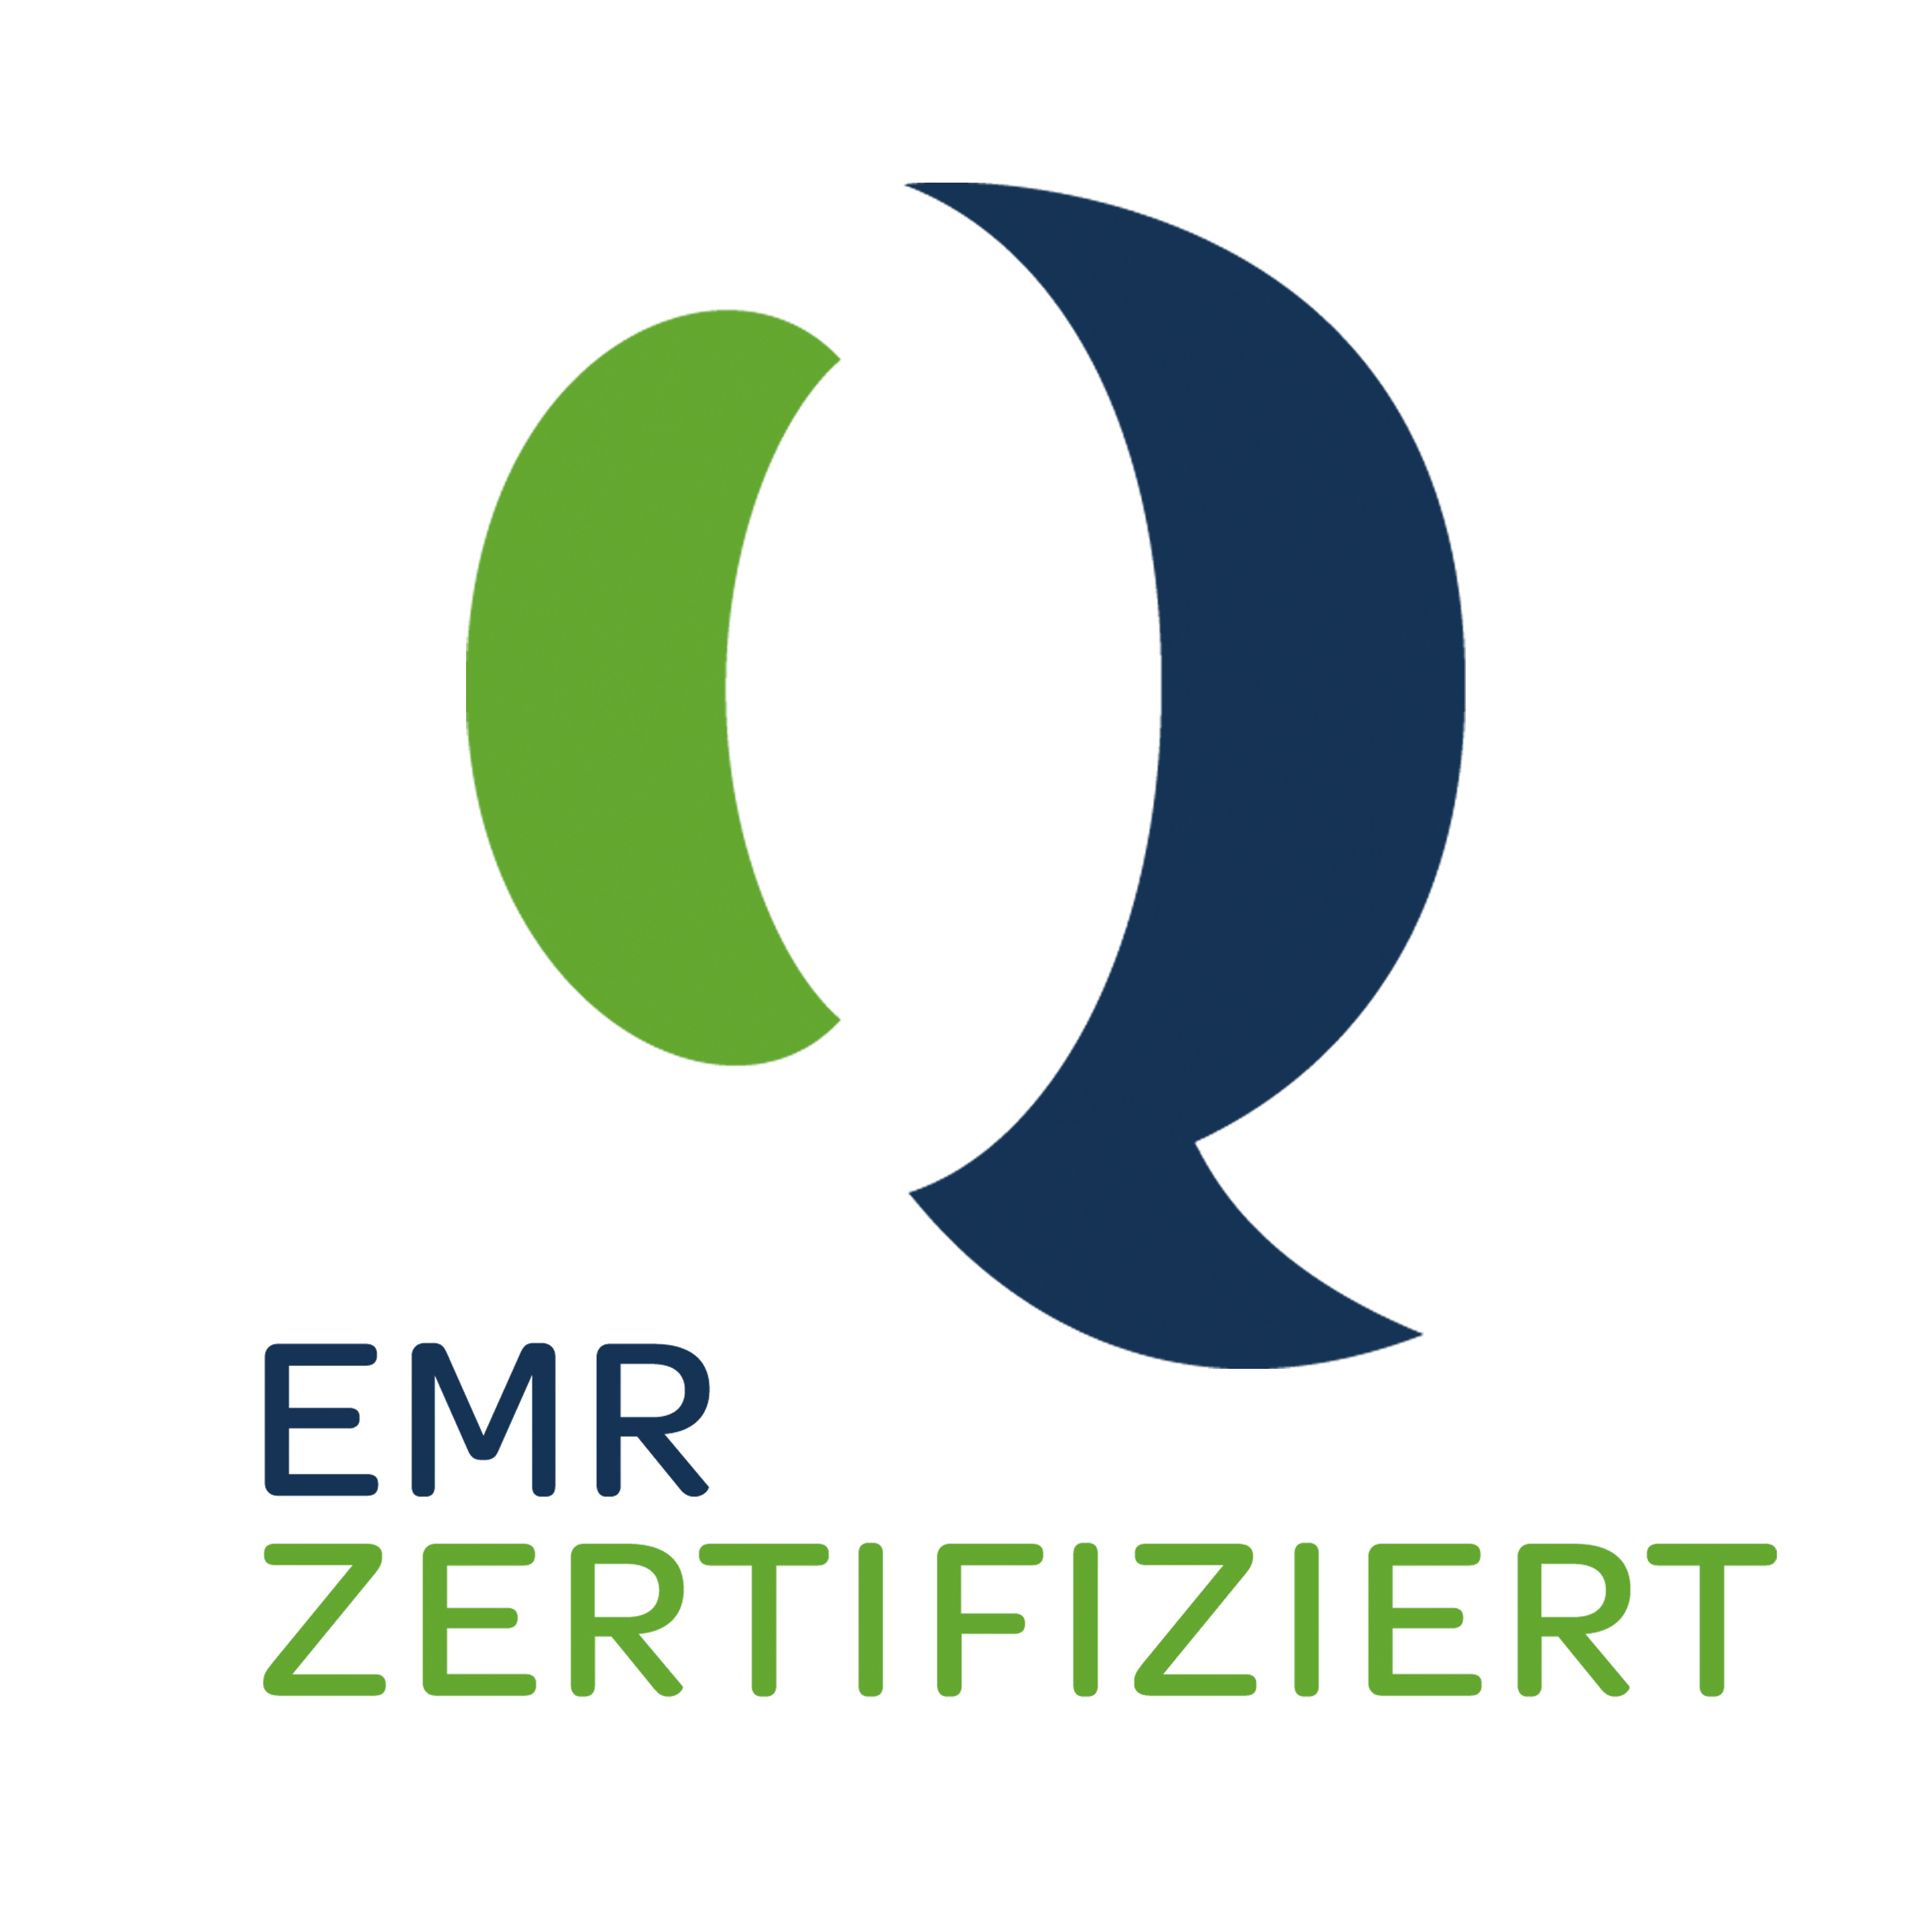 EMR zertifiziert